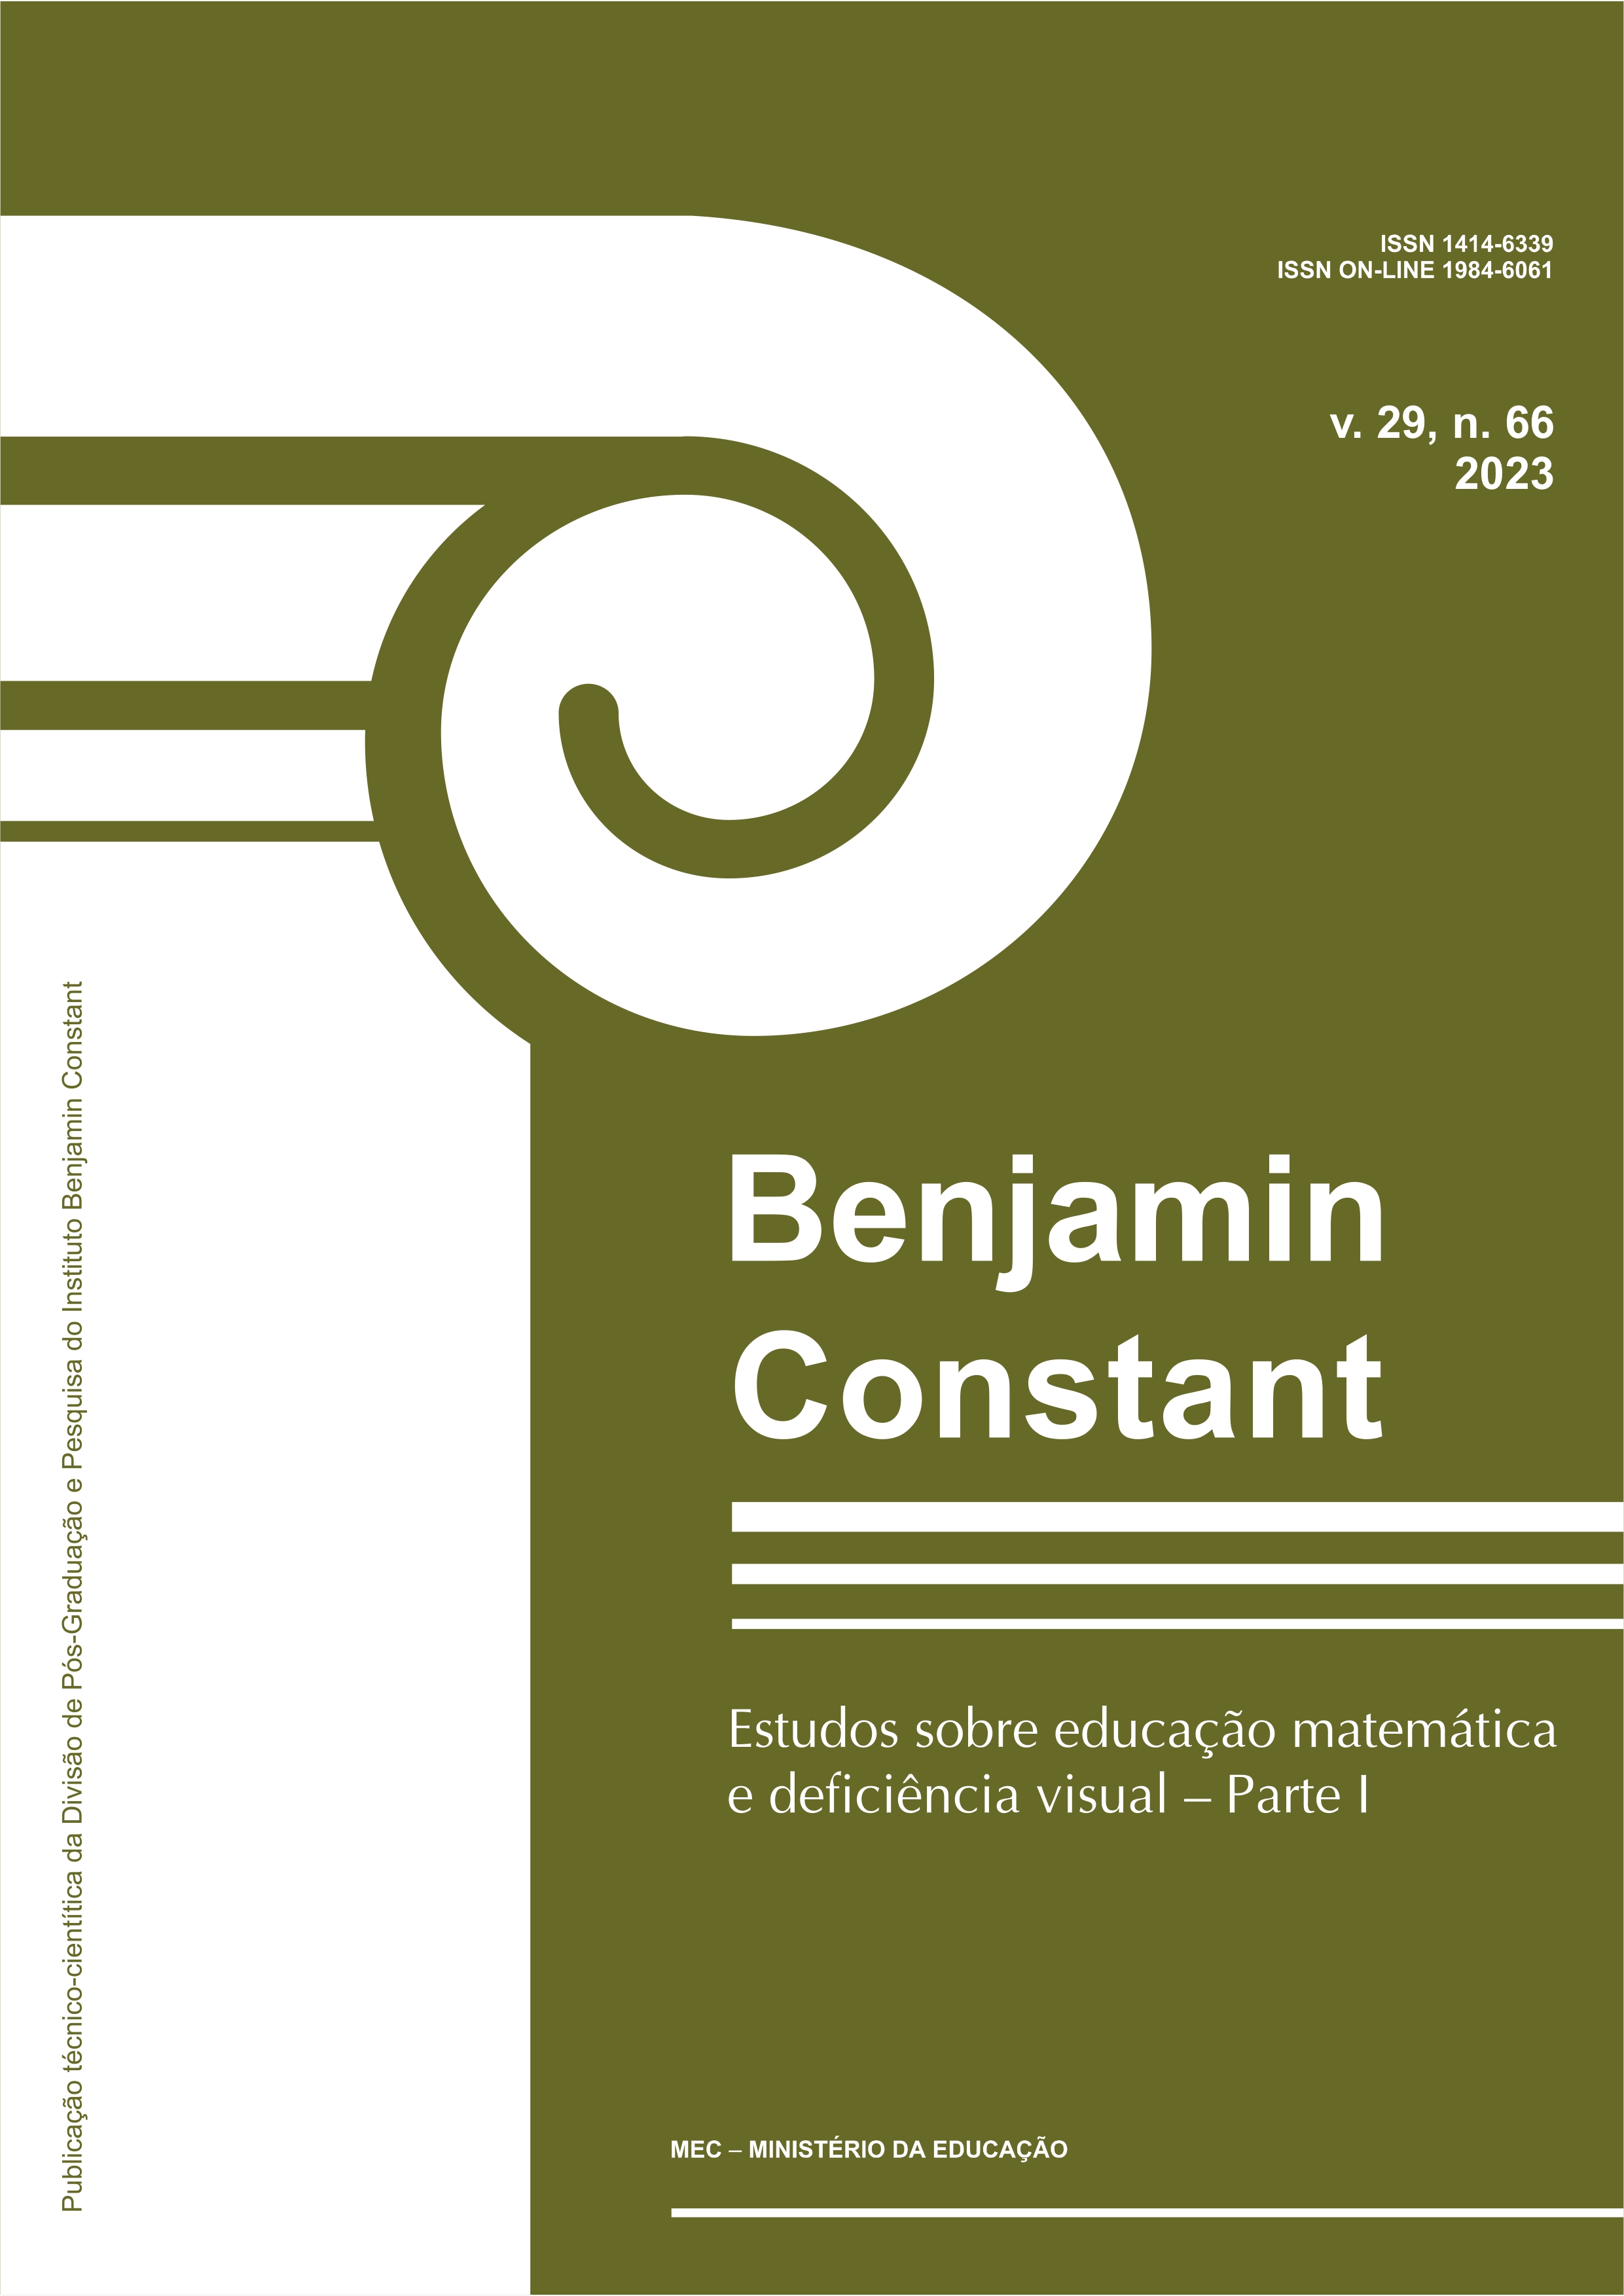 Benjamin Constant v. 29, n. 66 2023 - Estudos sobre educação matemática e deficiência visual - parte I